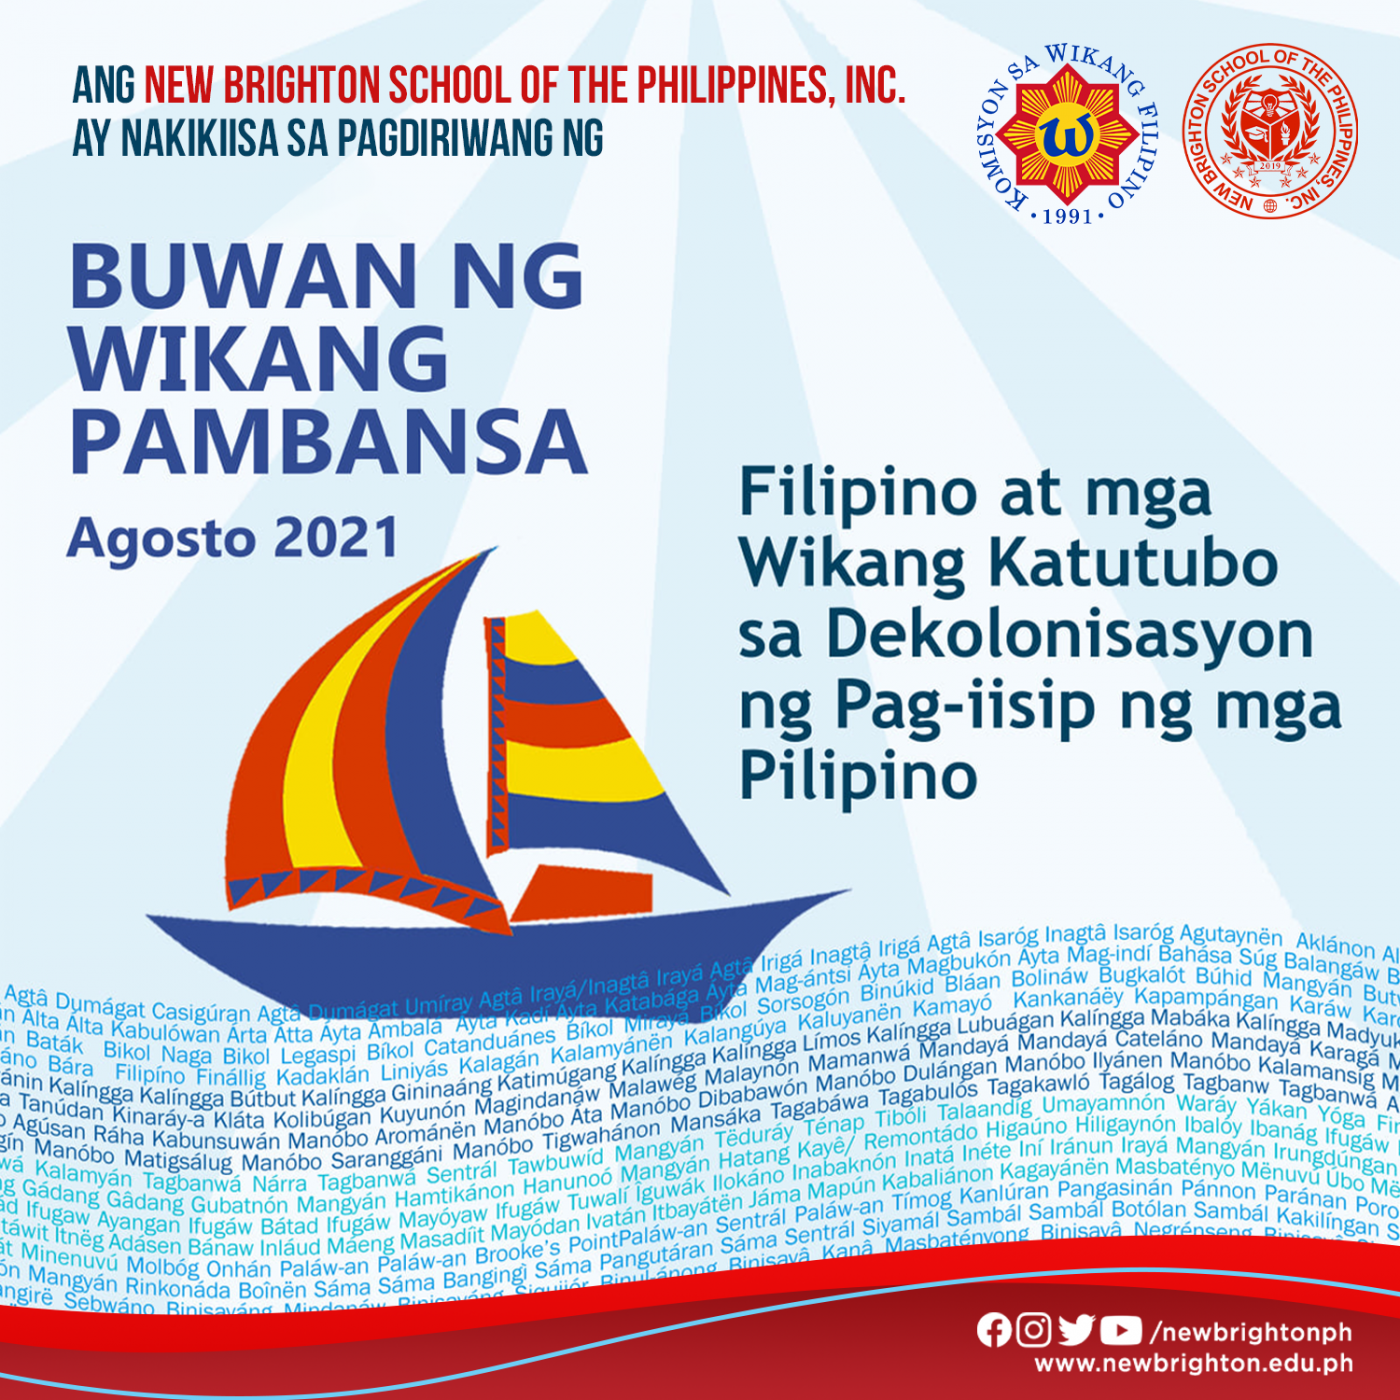 Filipino at mga Katutubong Wika sa Dekolonisasyon ng Pag-iisip ng mga Pilipino